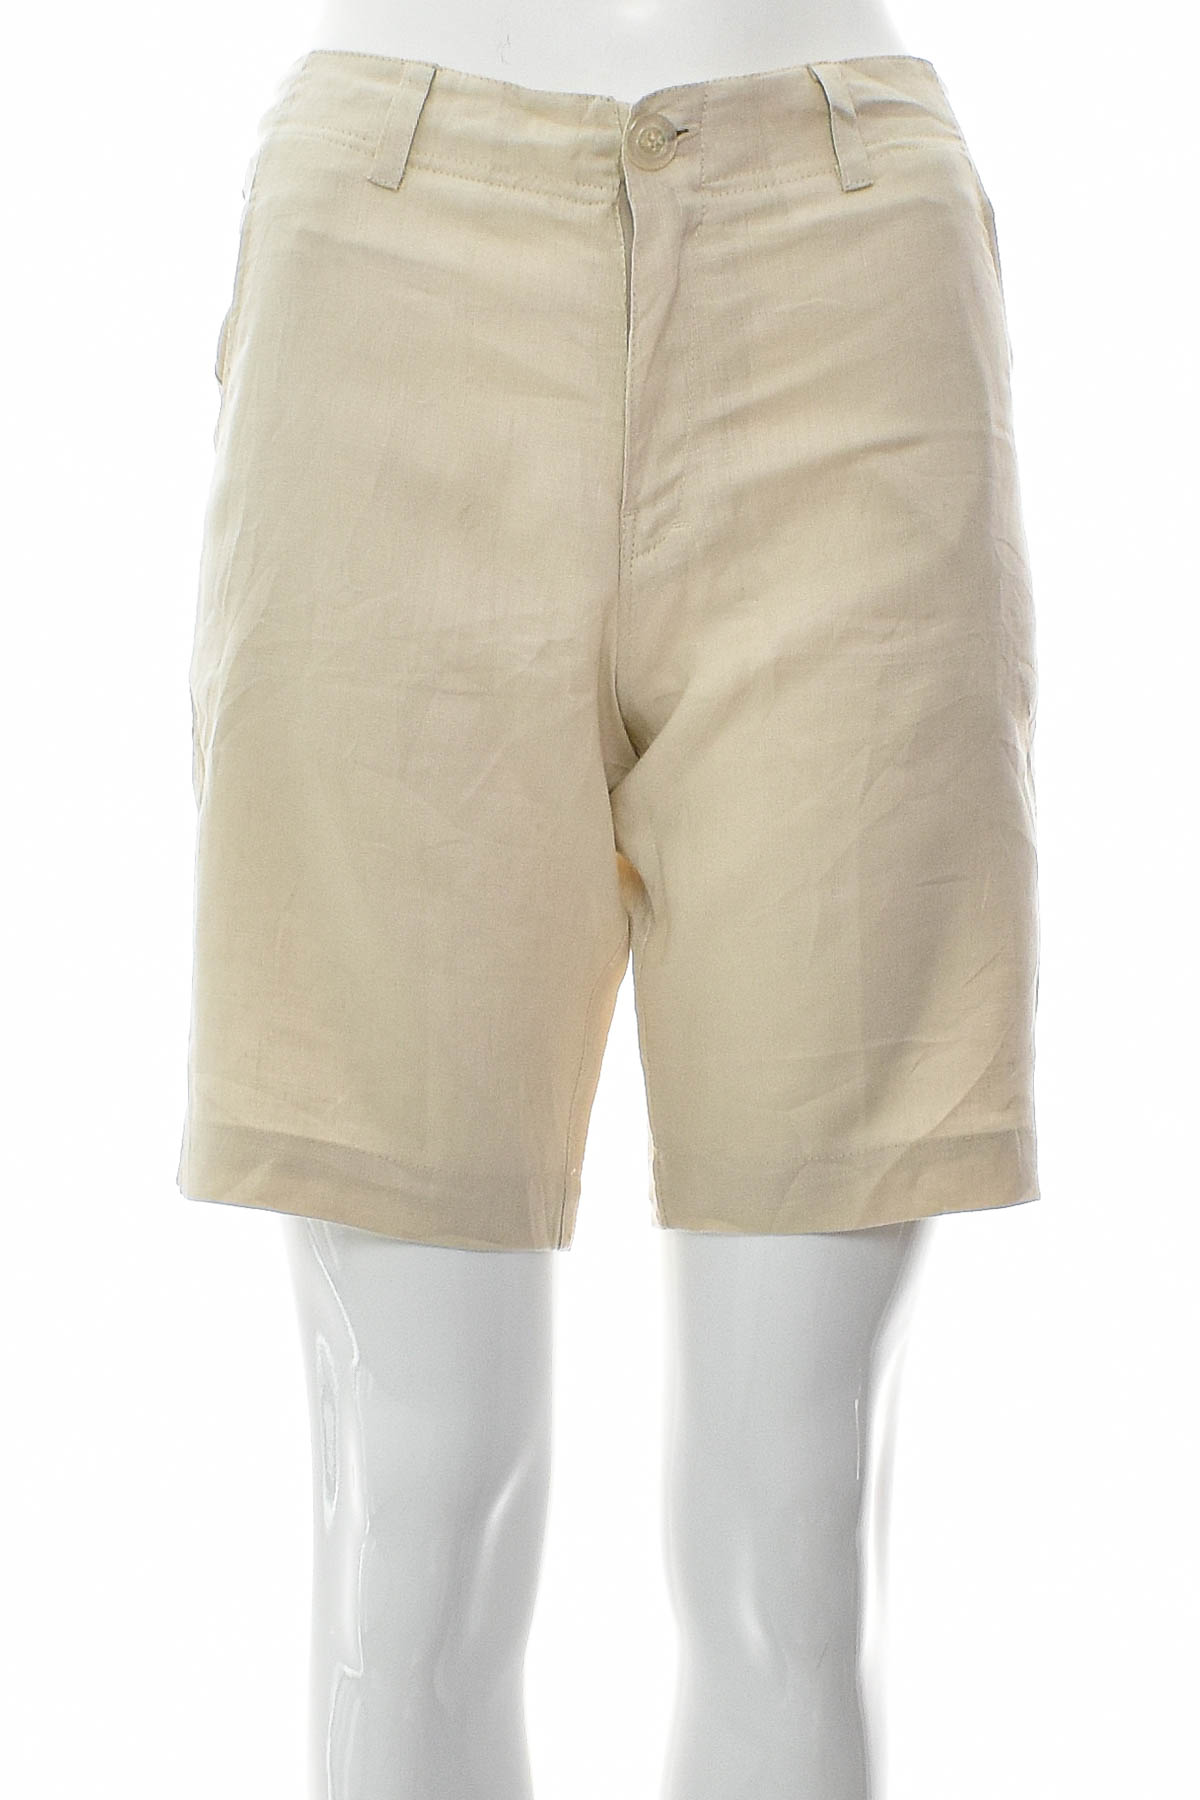 Female shorts - Island Importer - 0